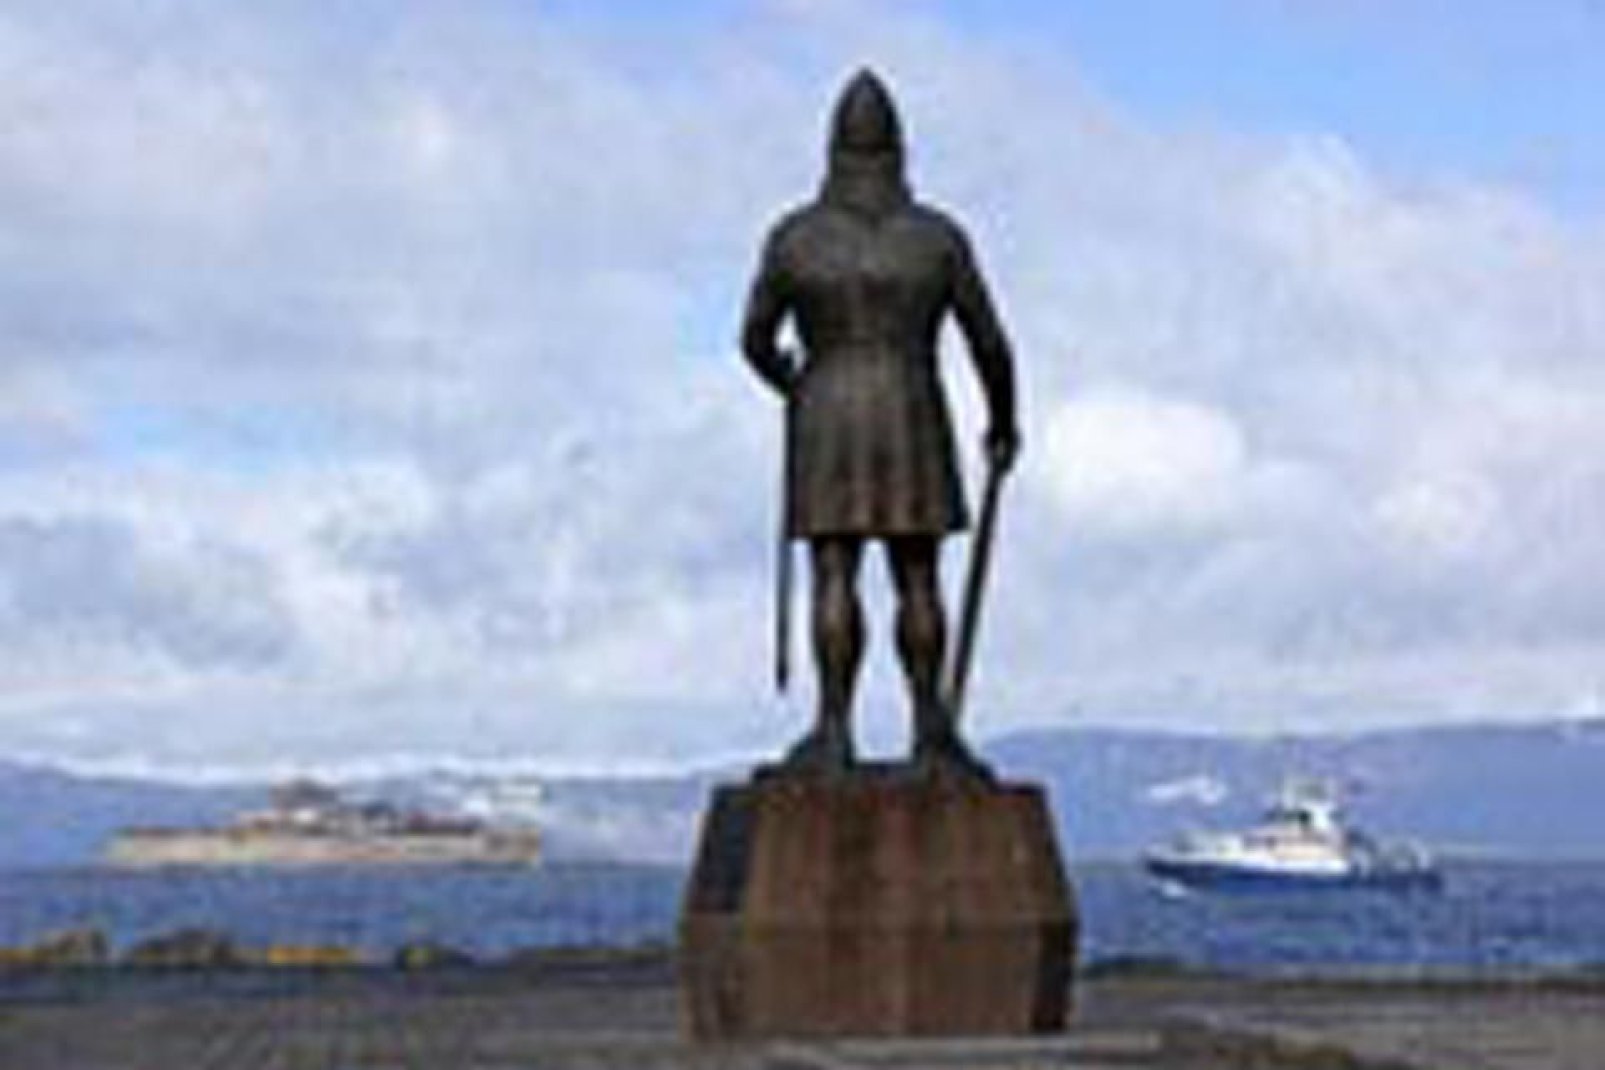 La estatua de Leif Erikson da la bienvenida a los barcos que entran en el puerto de Trondheim.